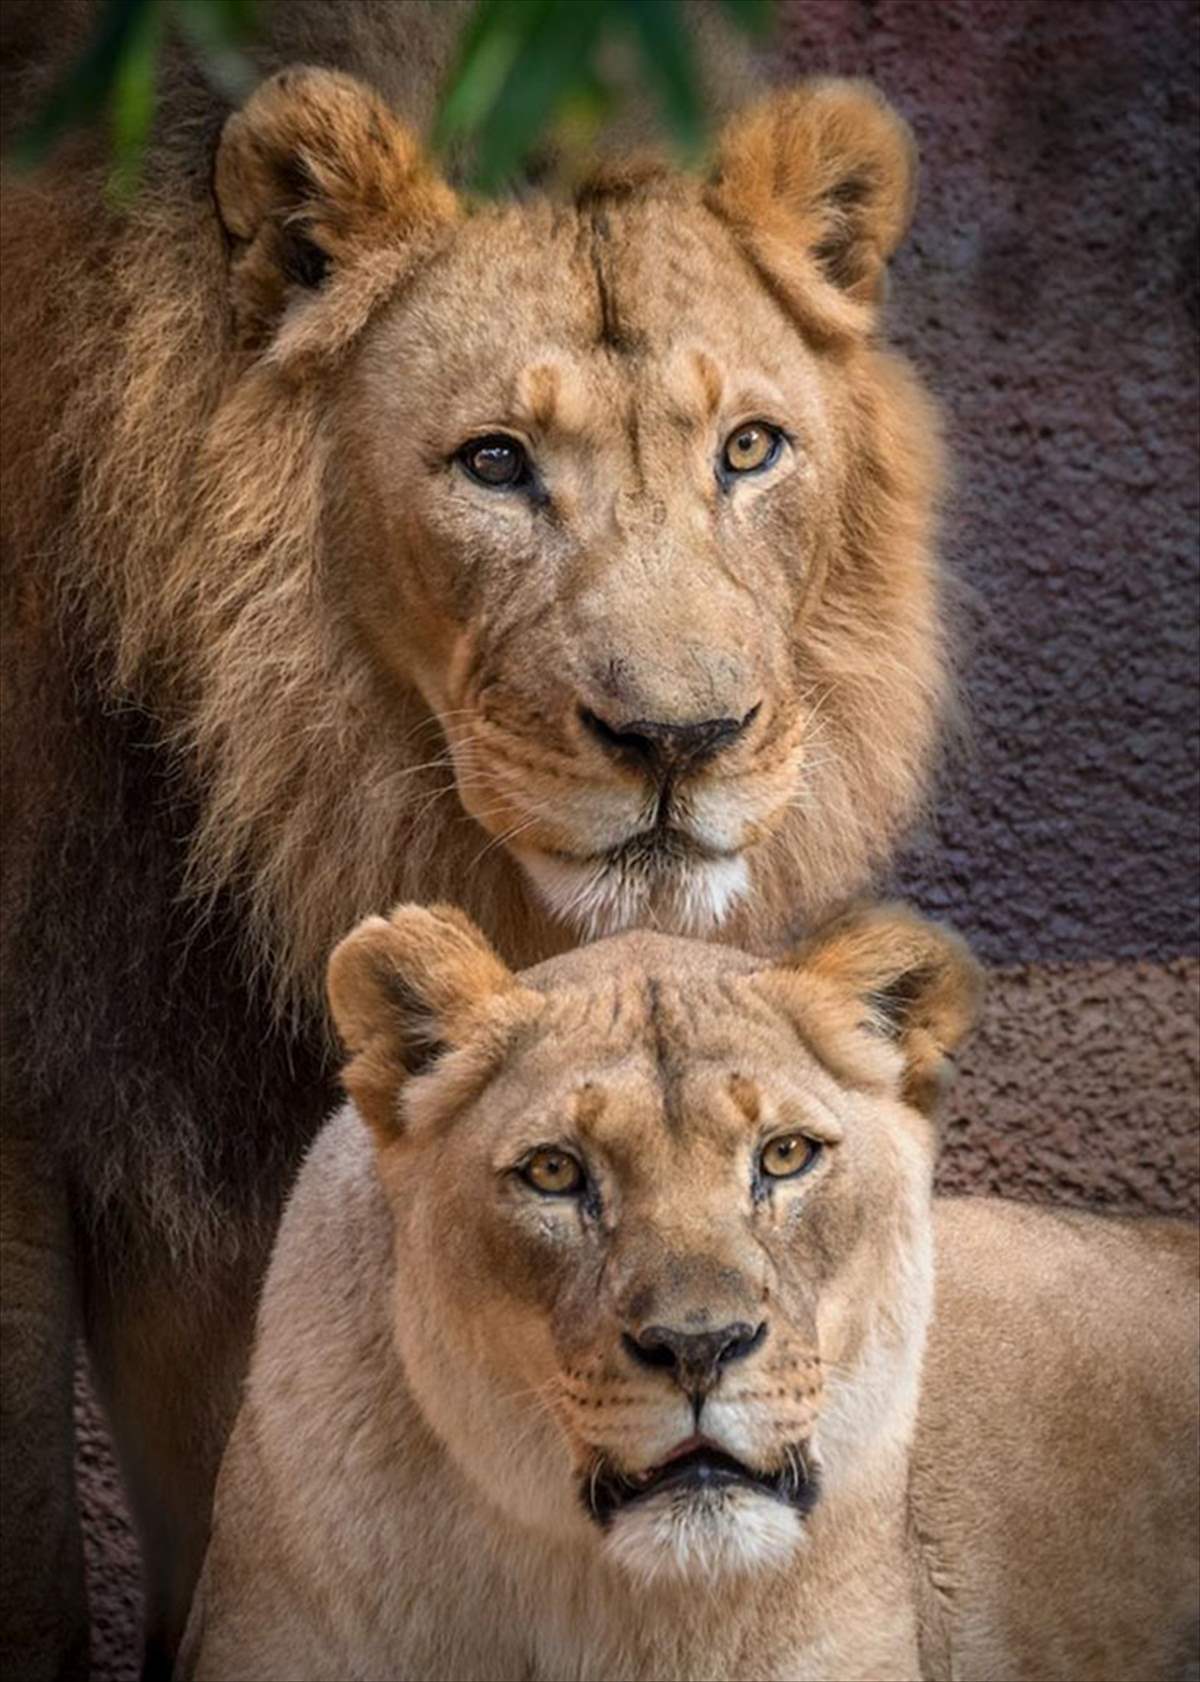 دو شیر آفریقایی زیبا در باغ وحش / هوبرت و کالیسا